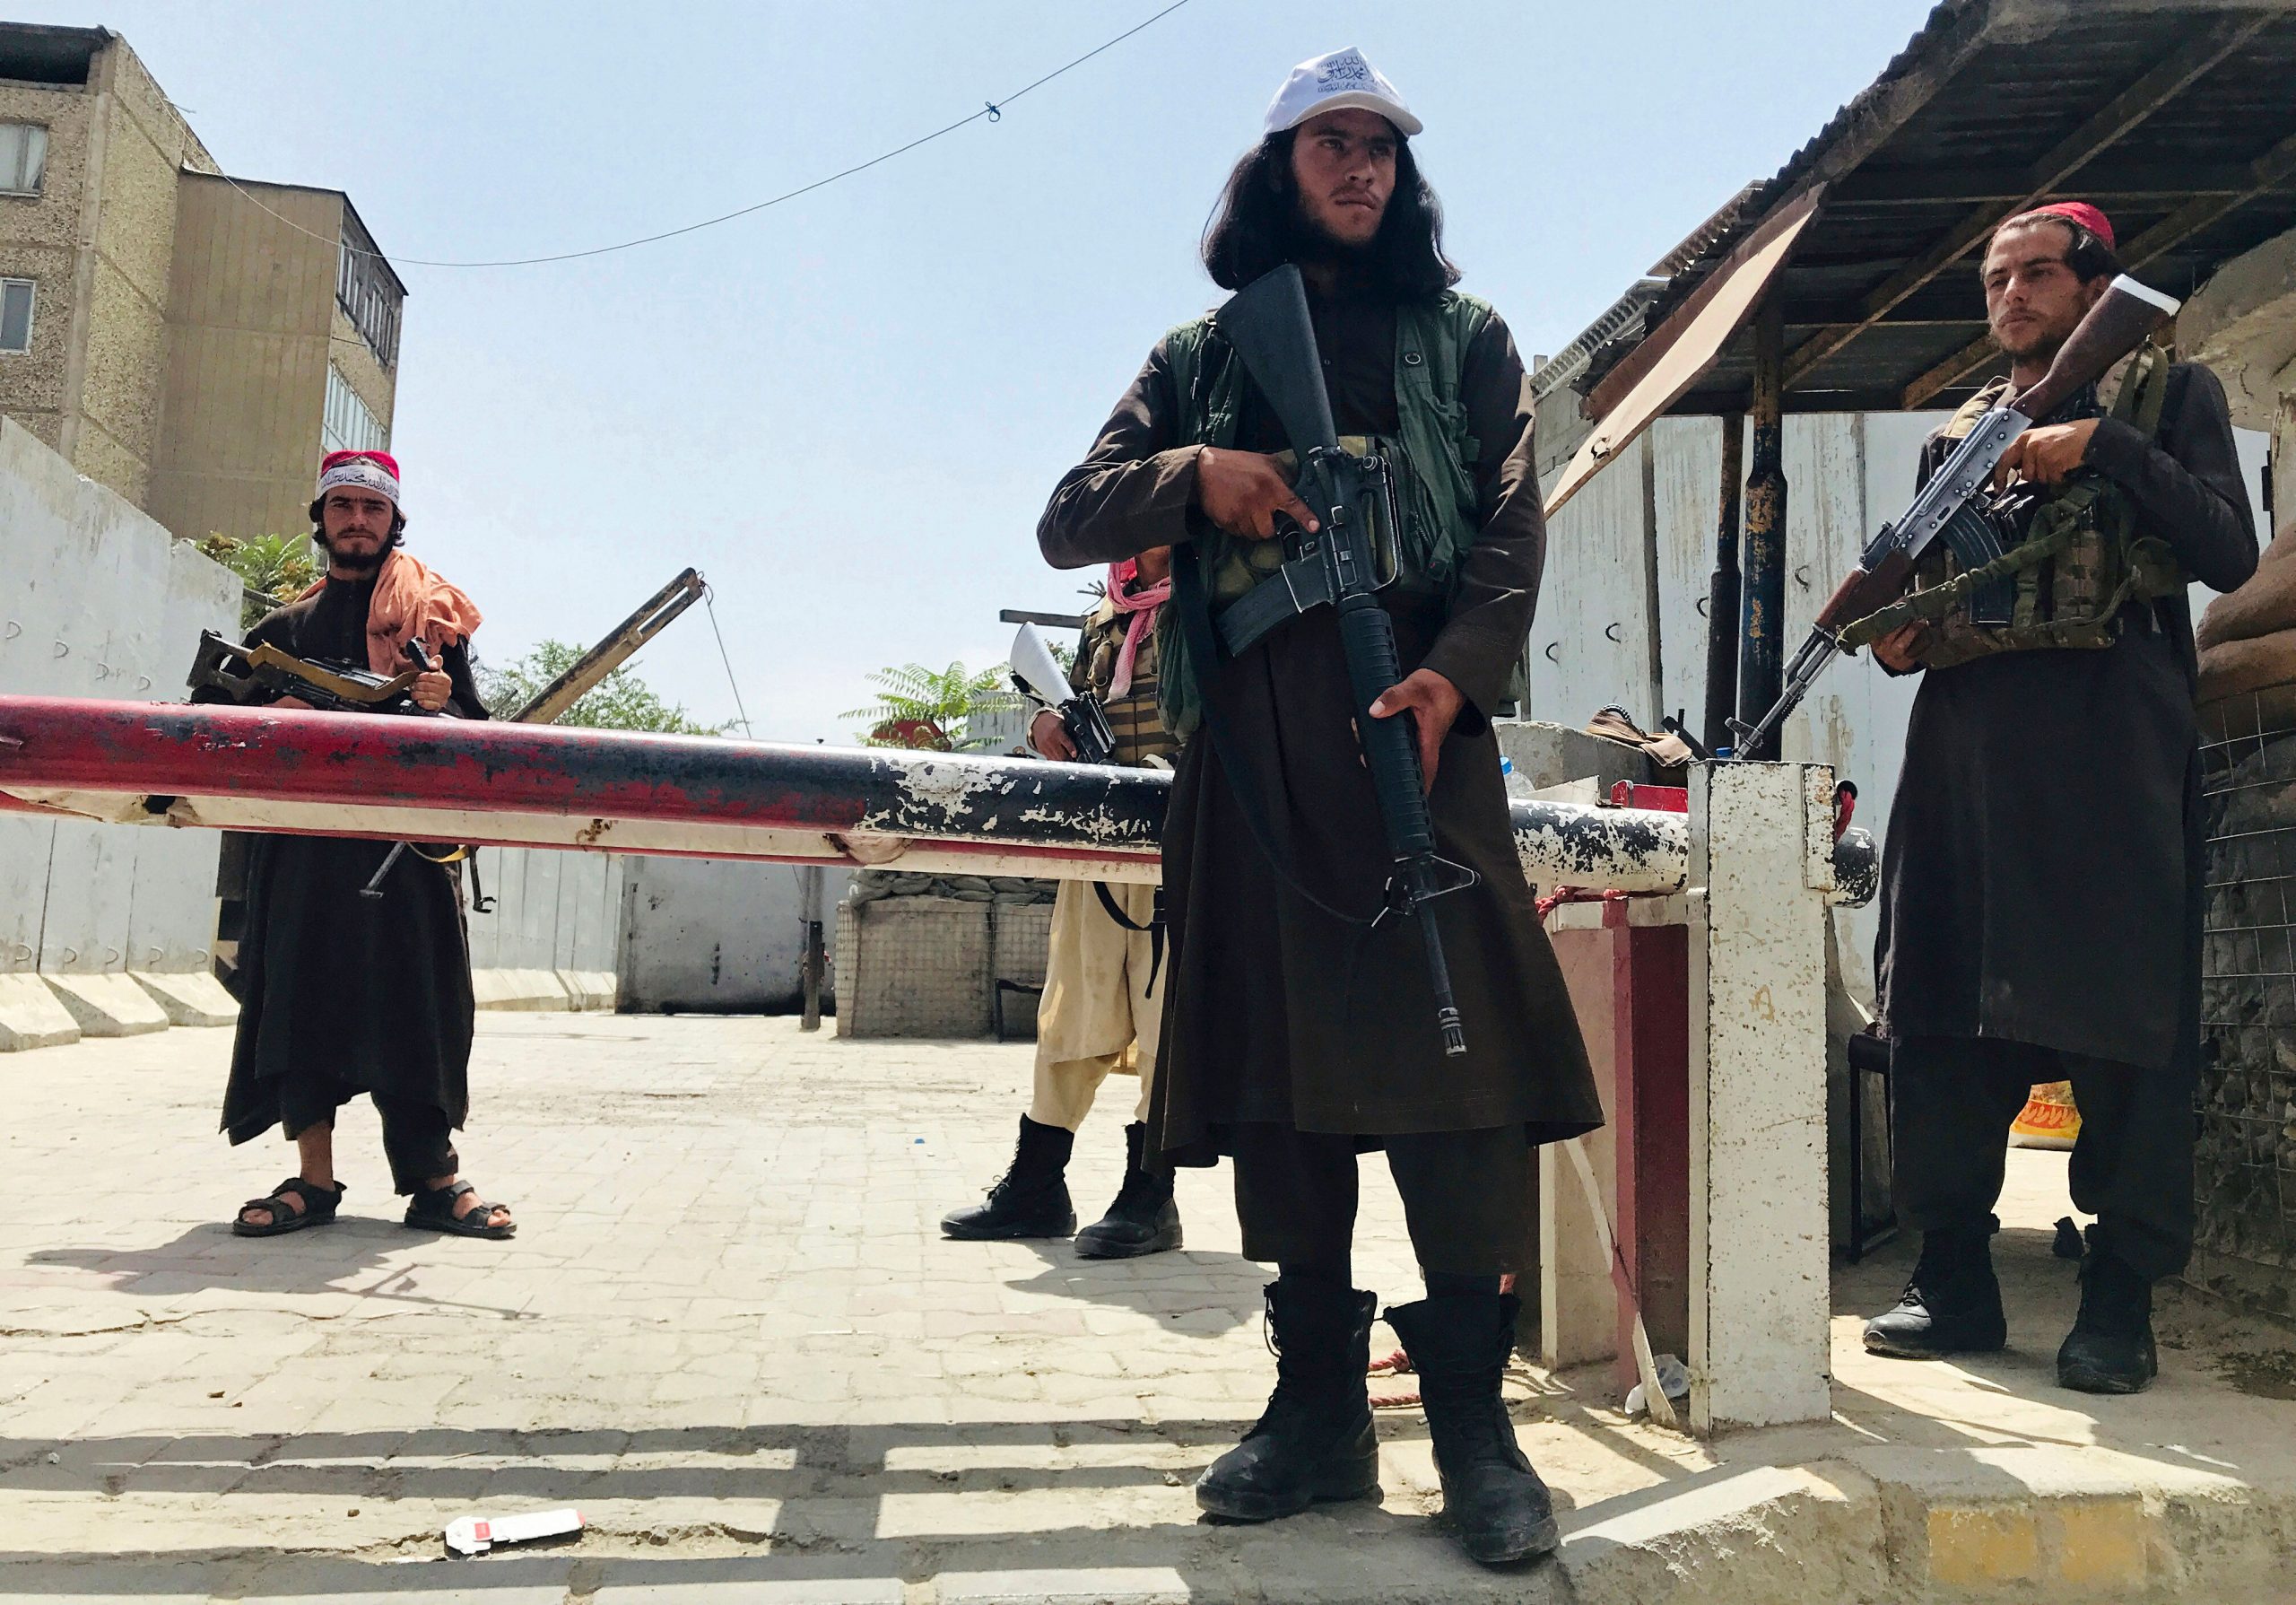 अफगानिस्तान में स्वतंत्रता दिवस पर तालिबान के खिलाफ प्रदर्शन, भीड़ पर हुई गोलीबारी में कई लोगों की मौत